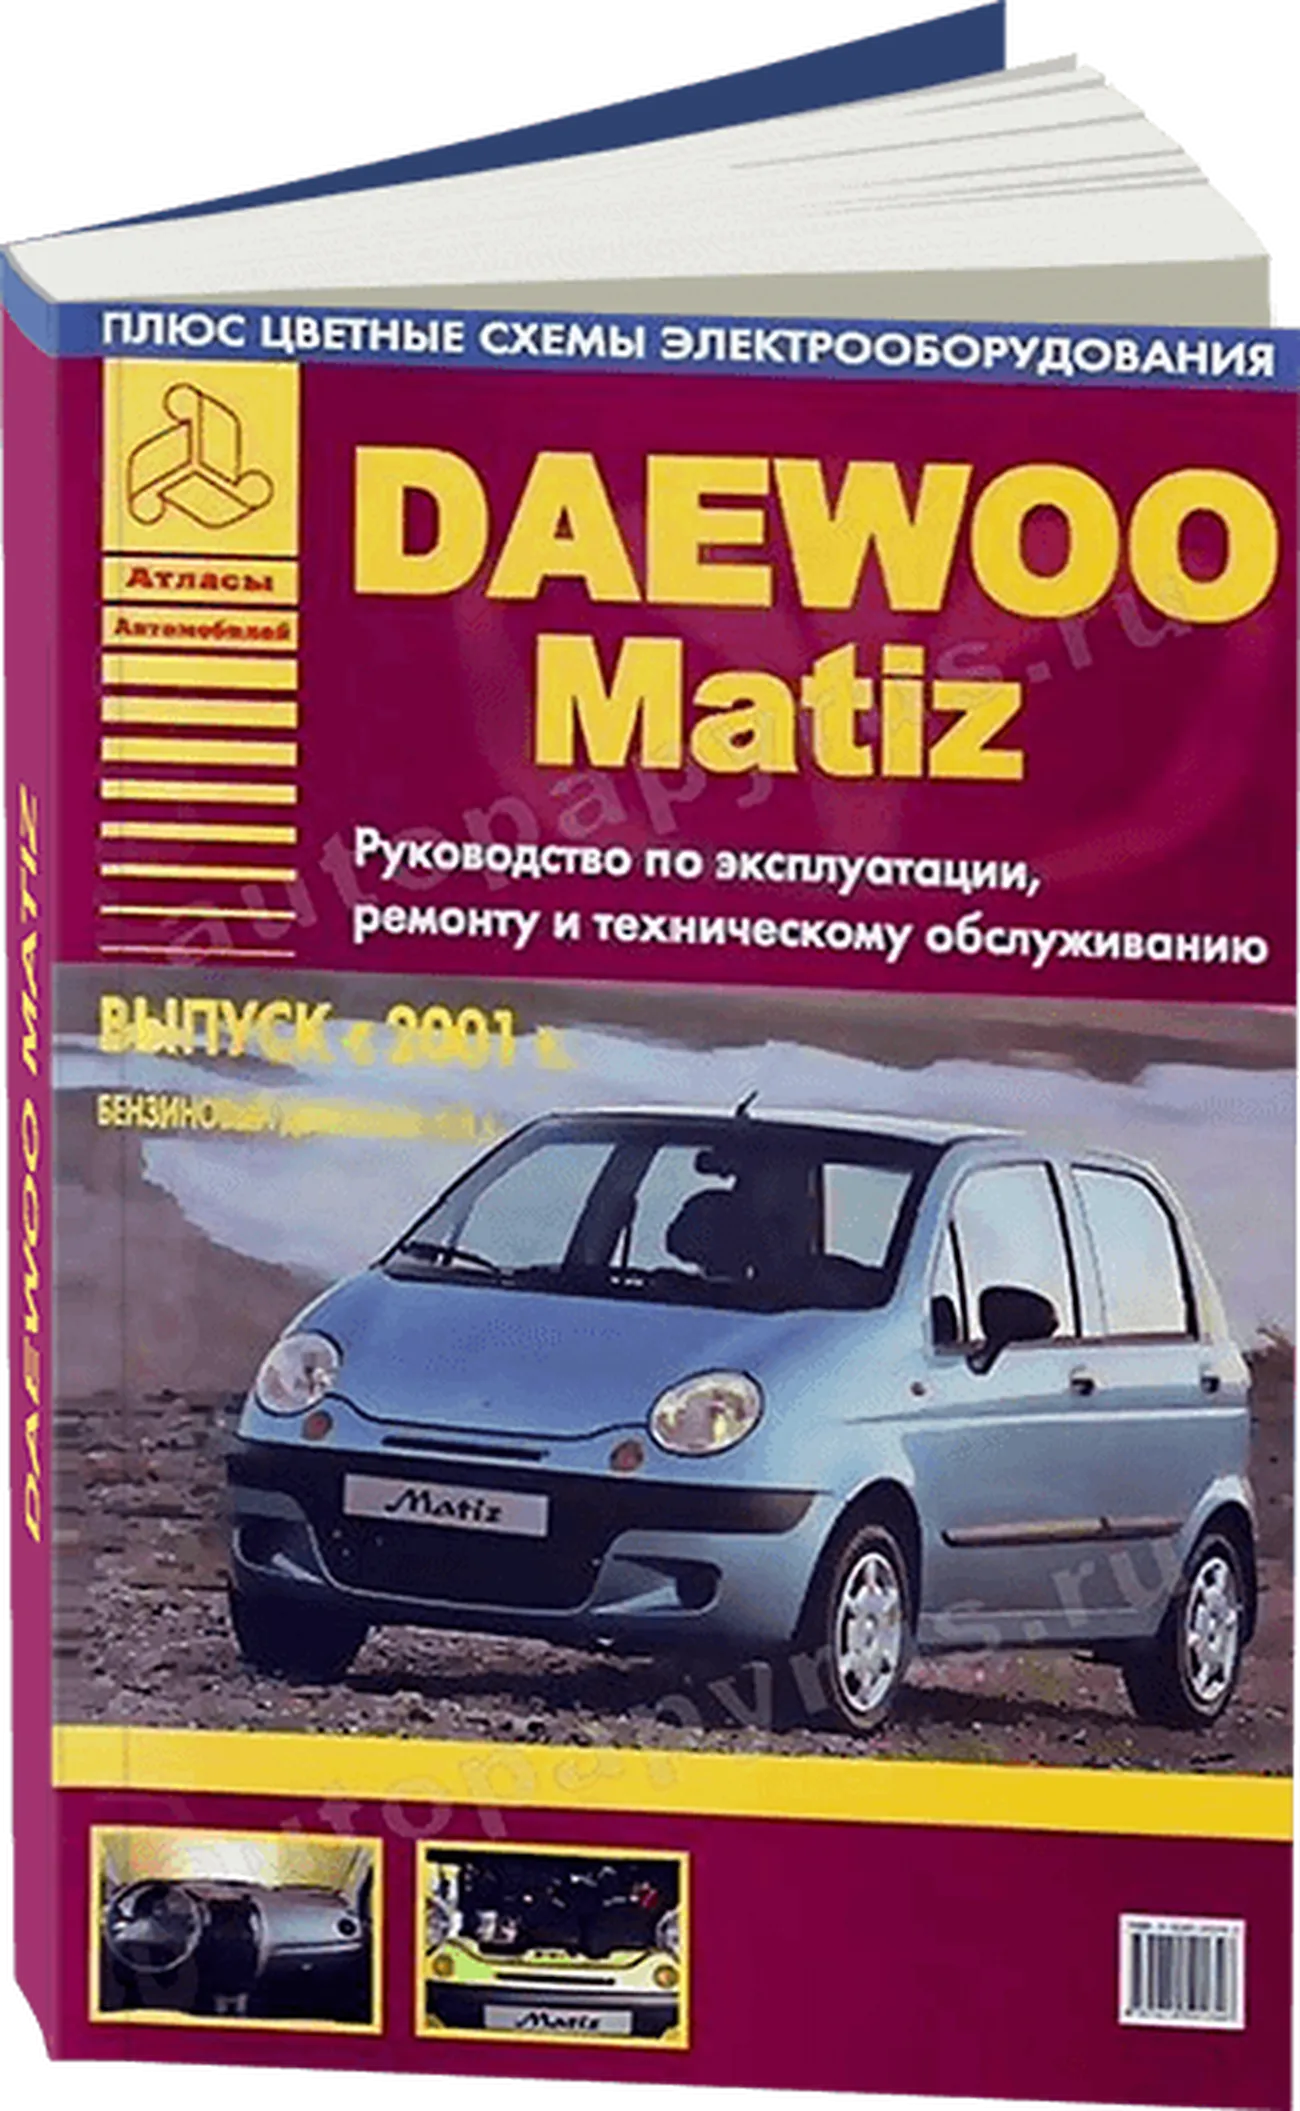 Книга: DAEWOO MATIZ (б) с 2001 г.в., рем., экспл., то | Арго-Авто